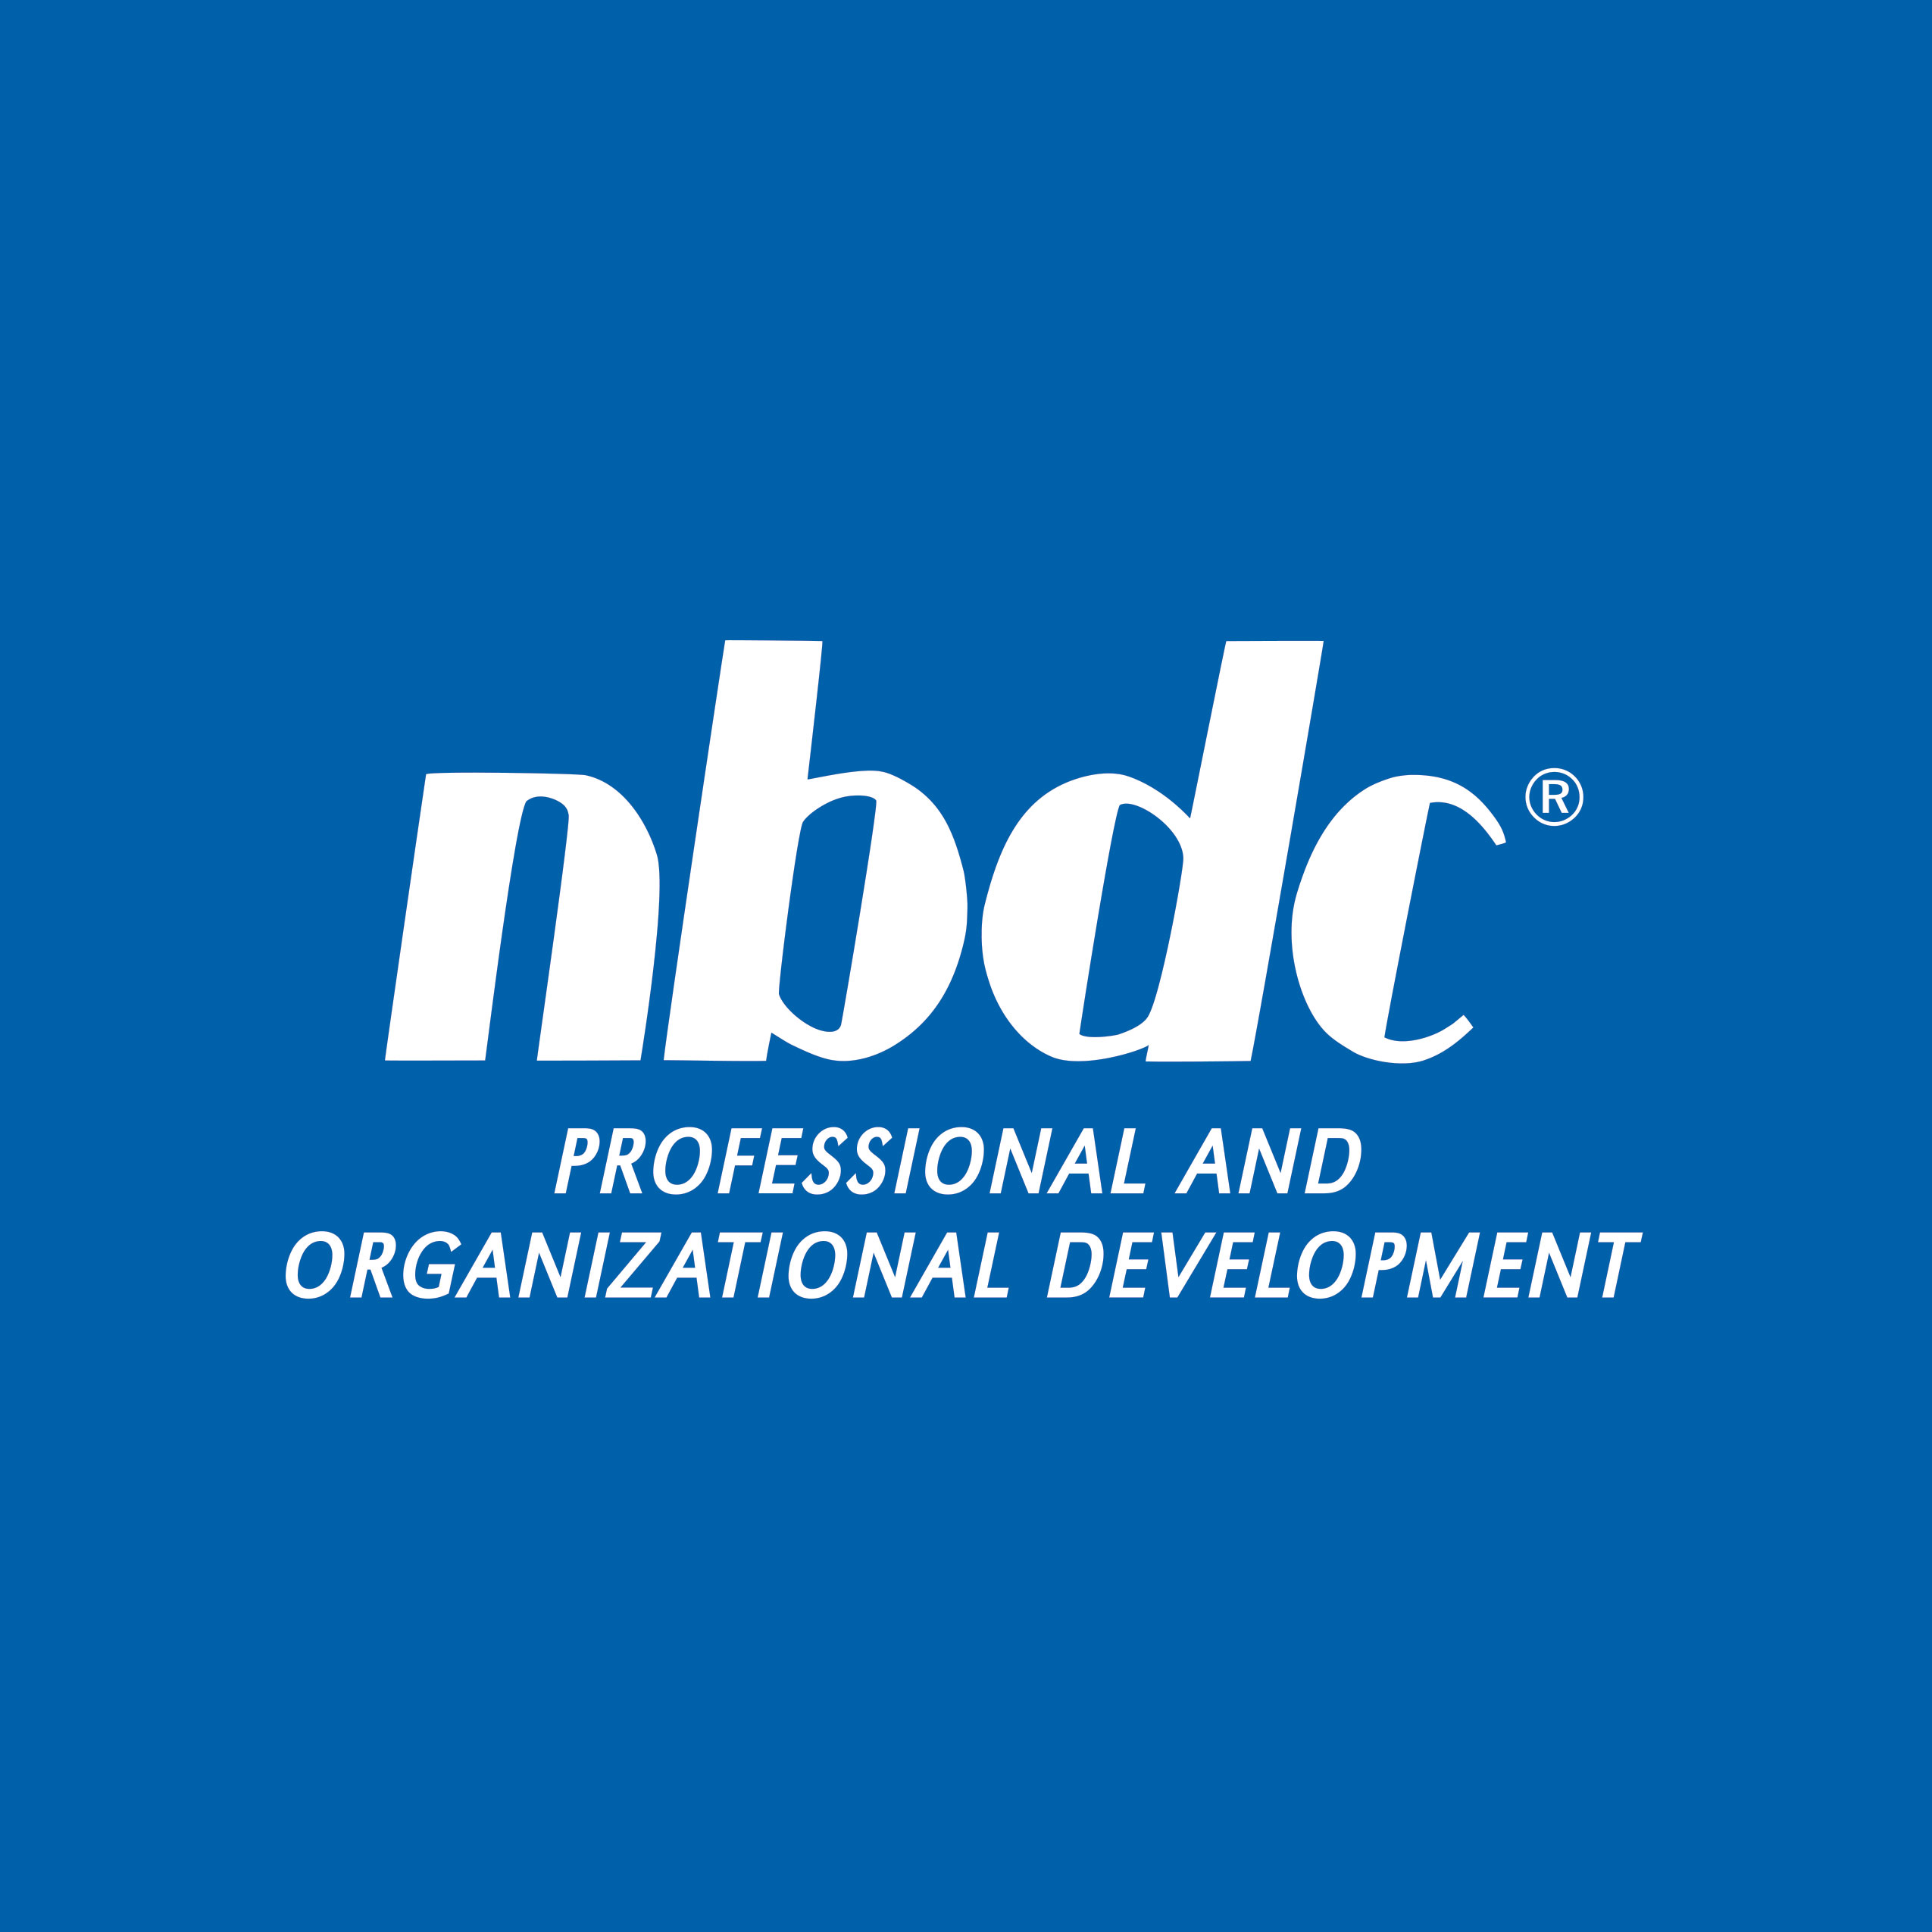 NBDC logo